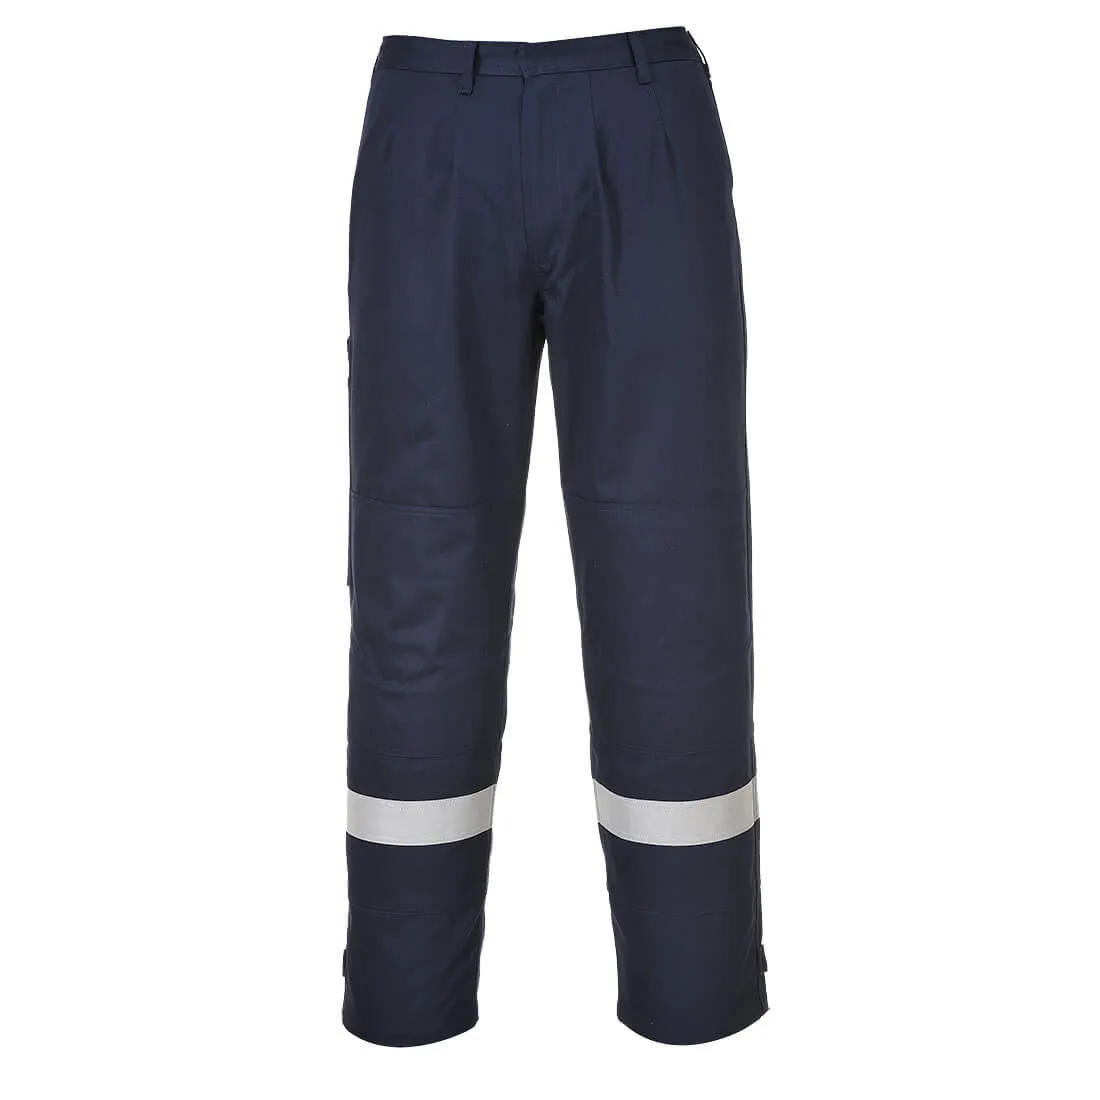 Biz Flame Plus Mens Flame Resistant Trousers - Navy Blue, 4XL, 32"